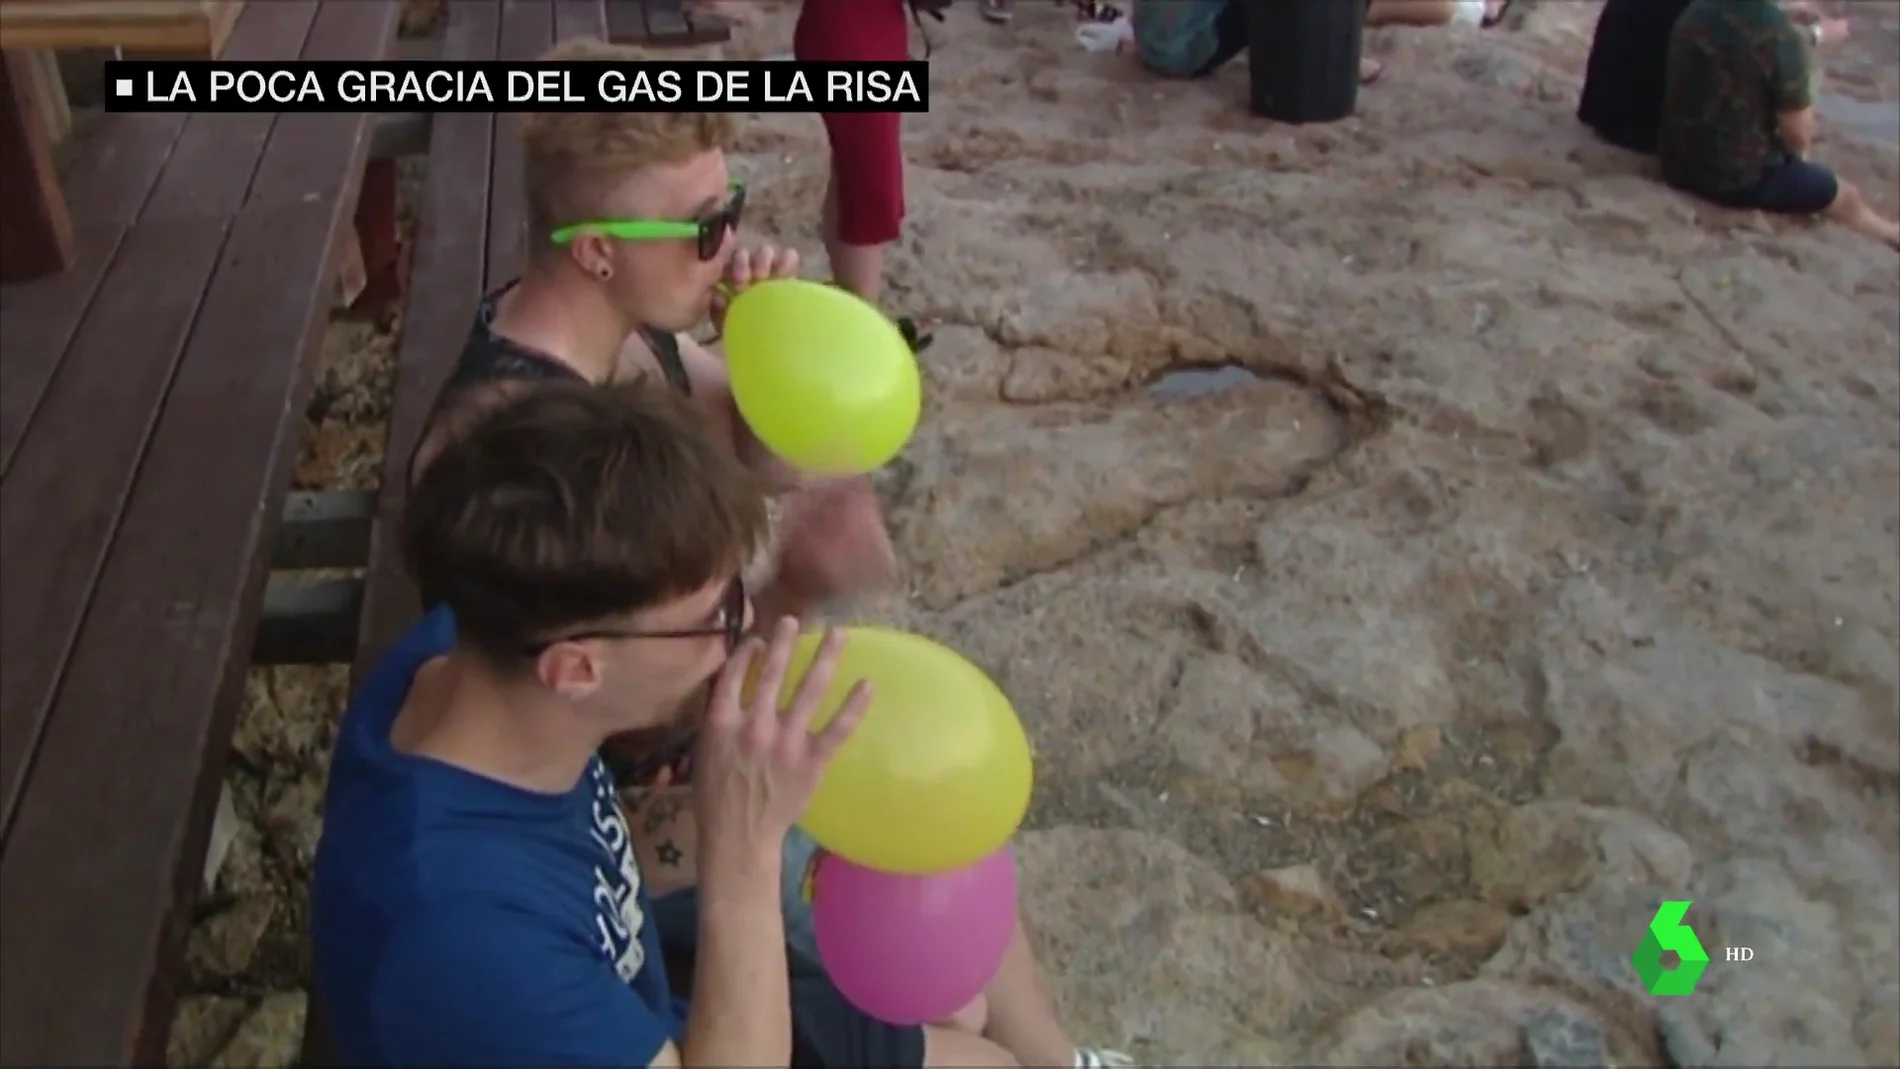 El peligro de los globos del 'gas de la risa' que proliferan en la noche de  Barcelona